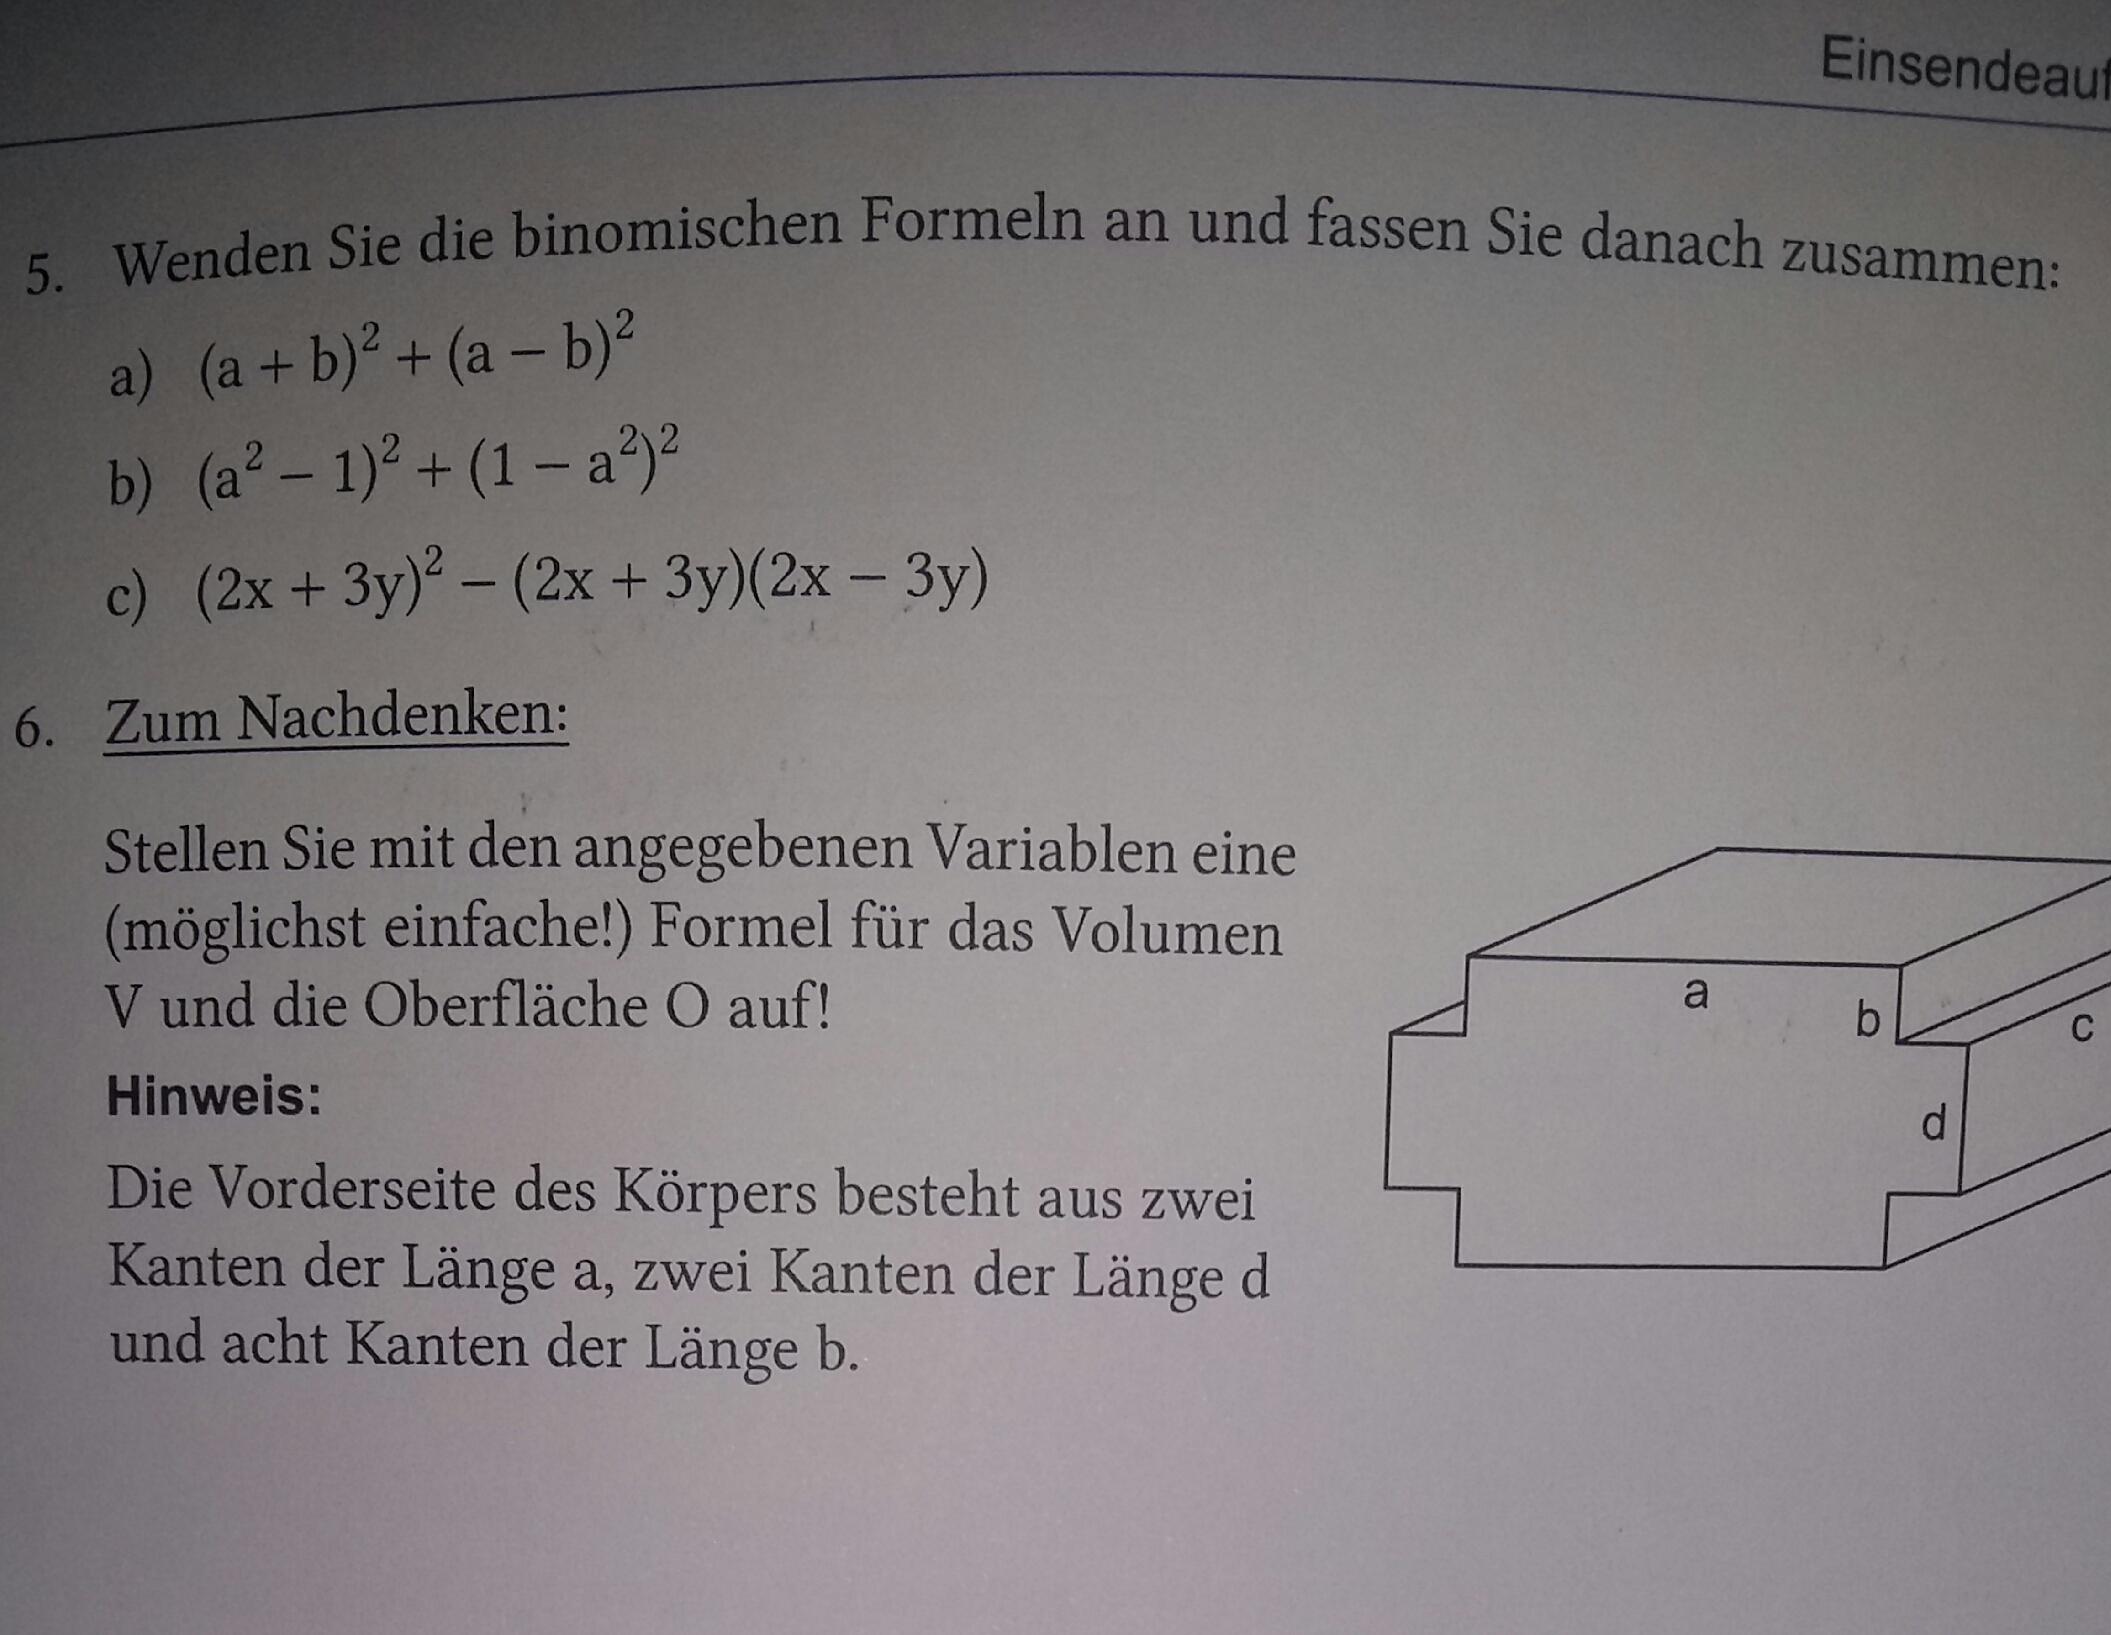 Binomische Formeln und Formel für ein Volumen berechnen ...